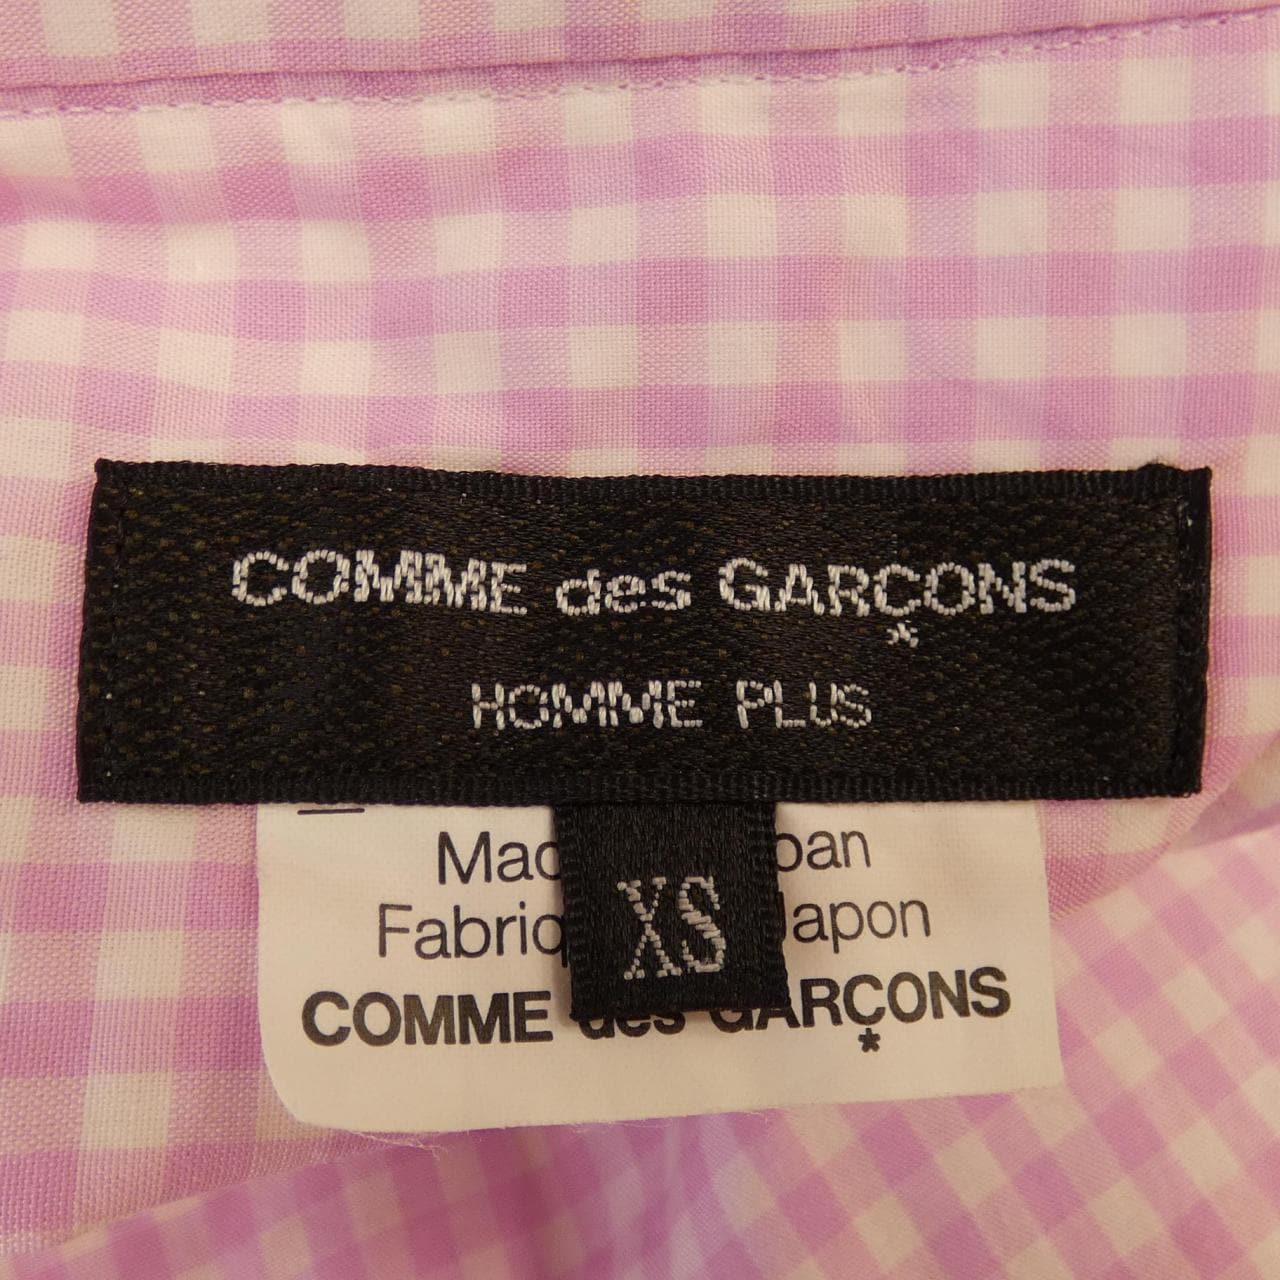 COMDEGALSONU PURUS GARCONS HOMME plus衬衫